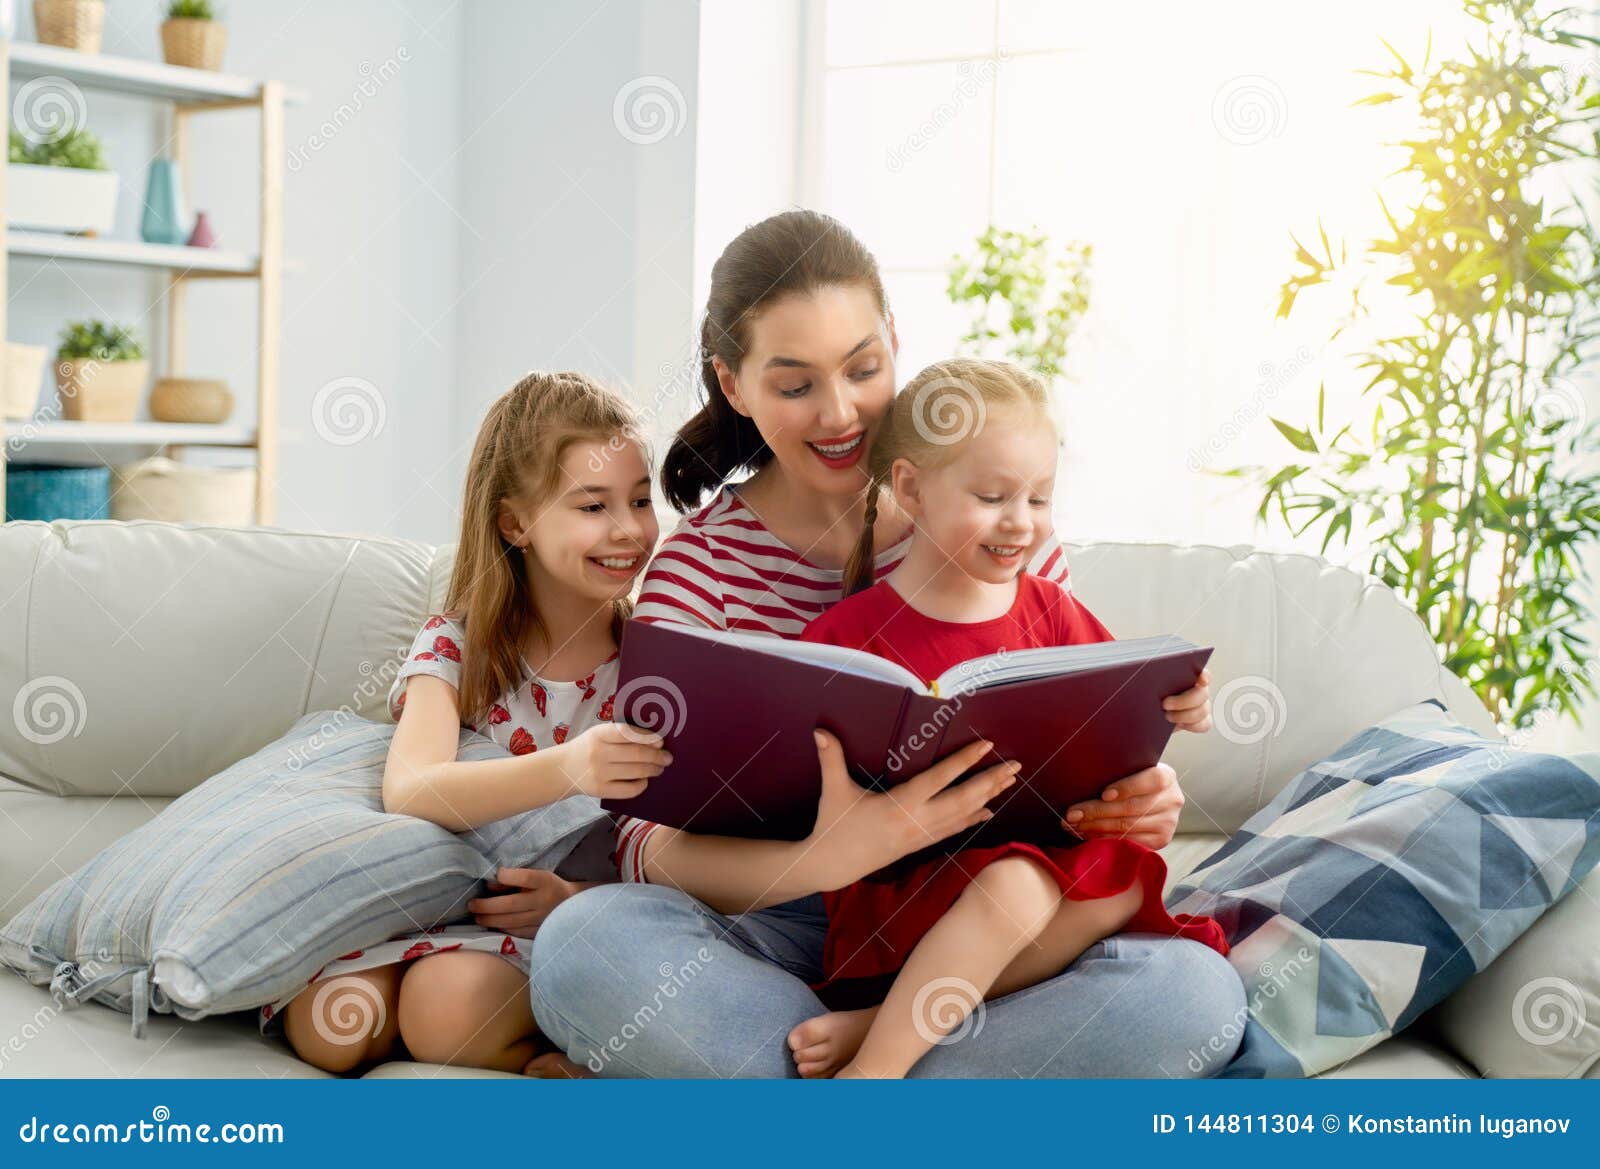 Читать мама подруги. Читает семья читает Страна. Читающая семья. Xbnftn ctvmz xbnfytn cnhfyf. Семья читает книгу.